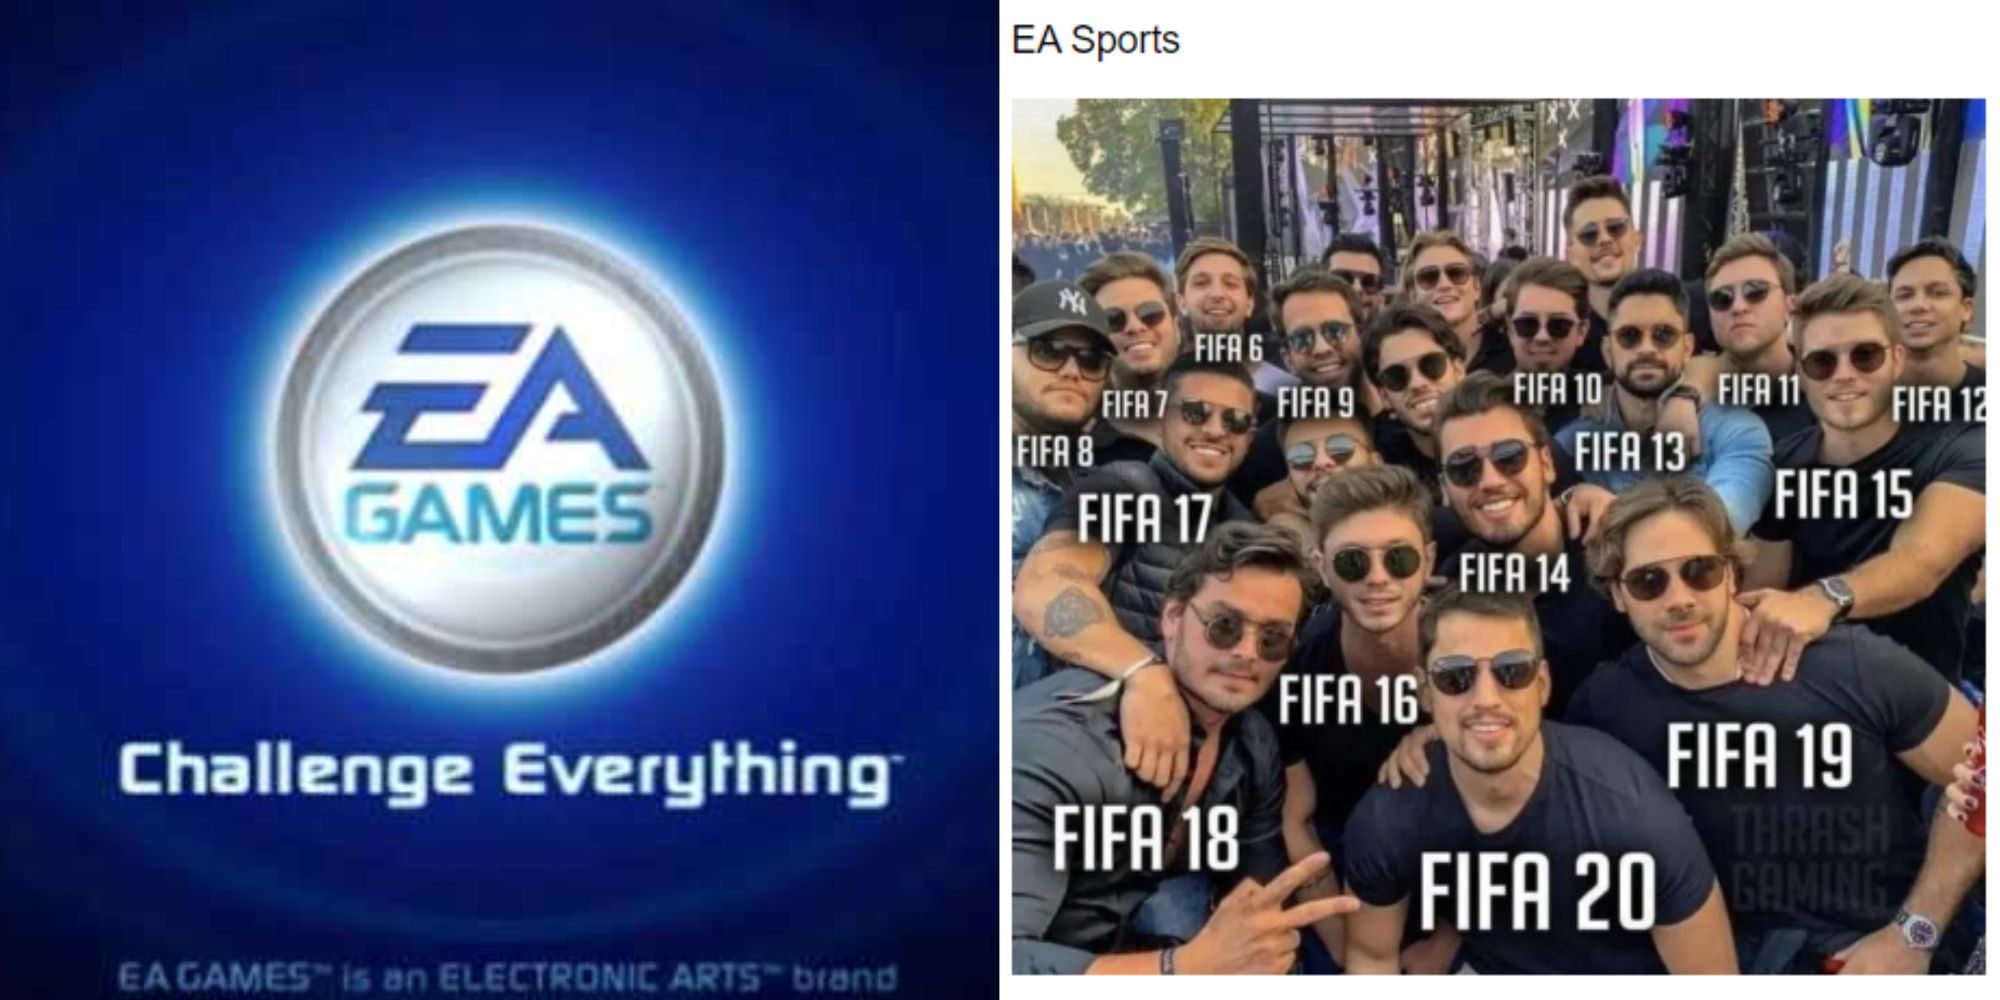 Split images of EA logo and an EA sports meme